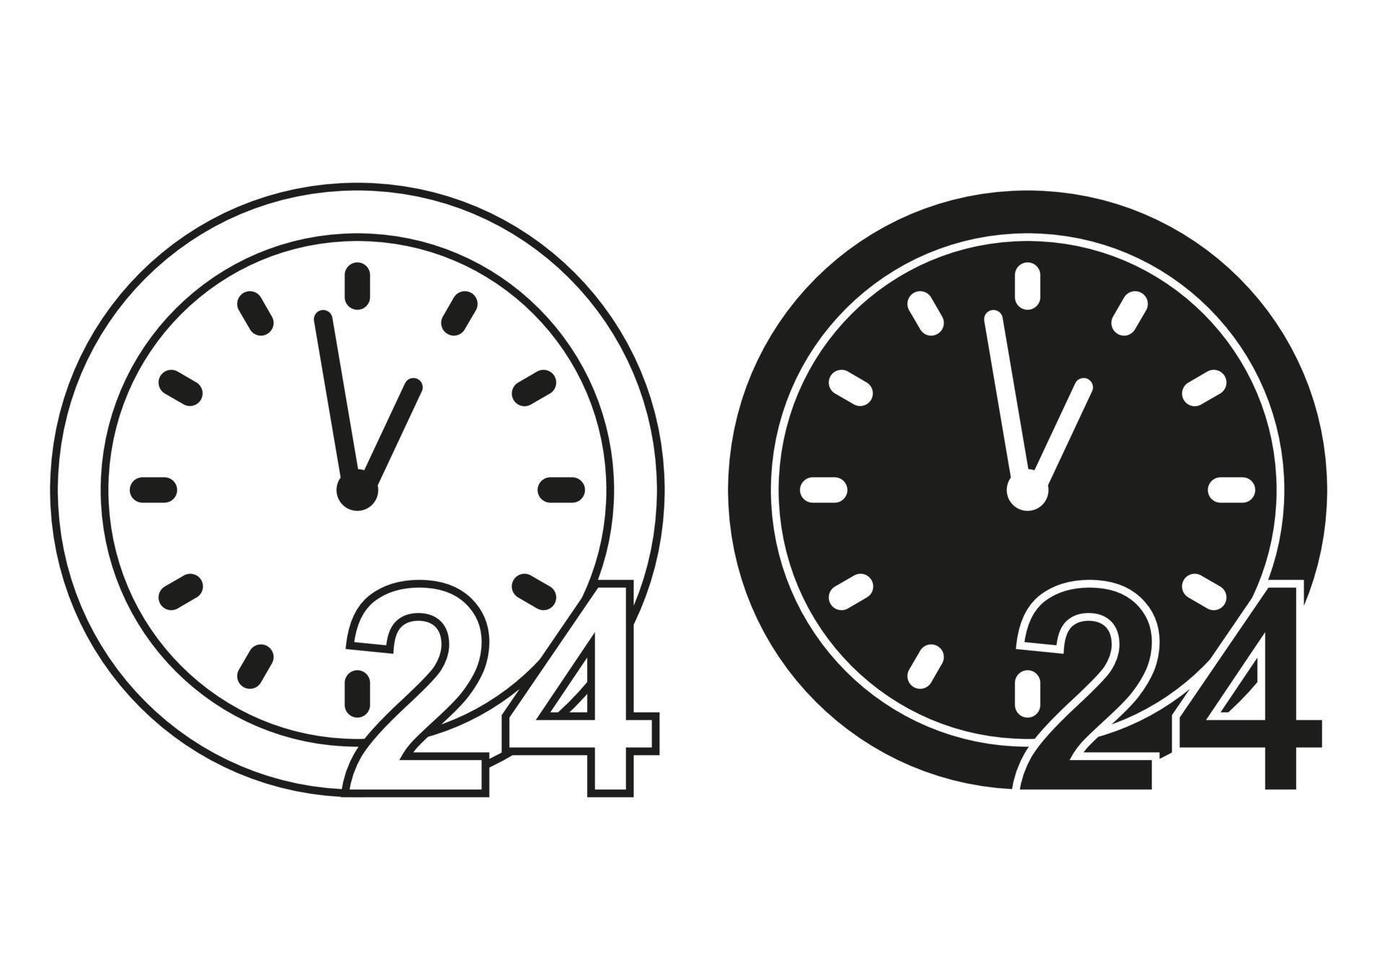 svart och vit beställnings- service Stöd 24 timmar ikon platt design vektor